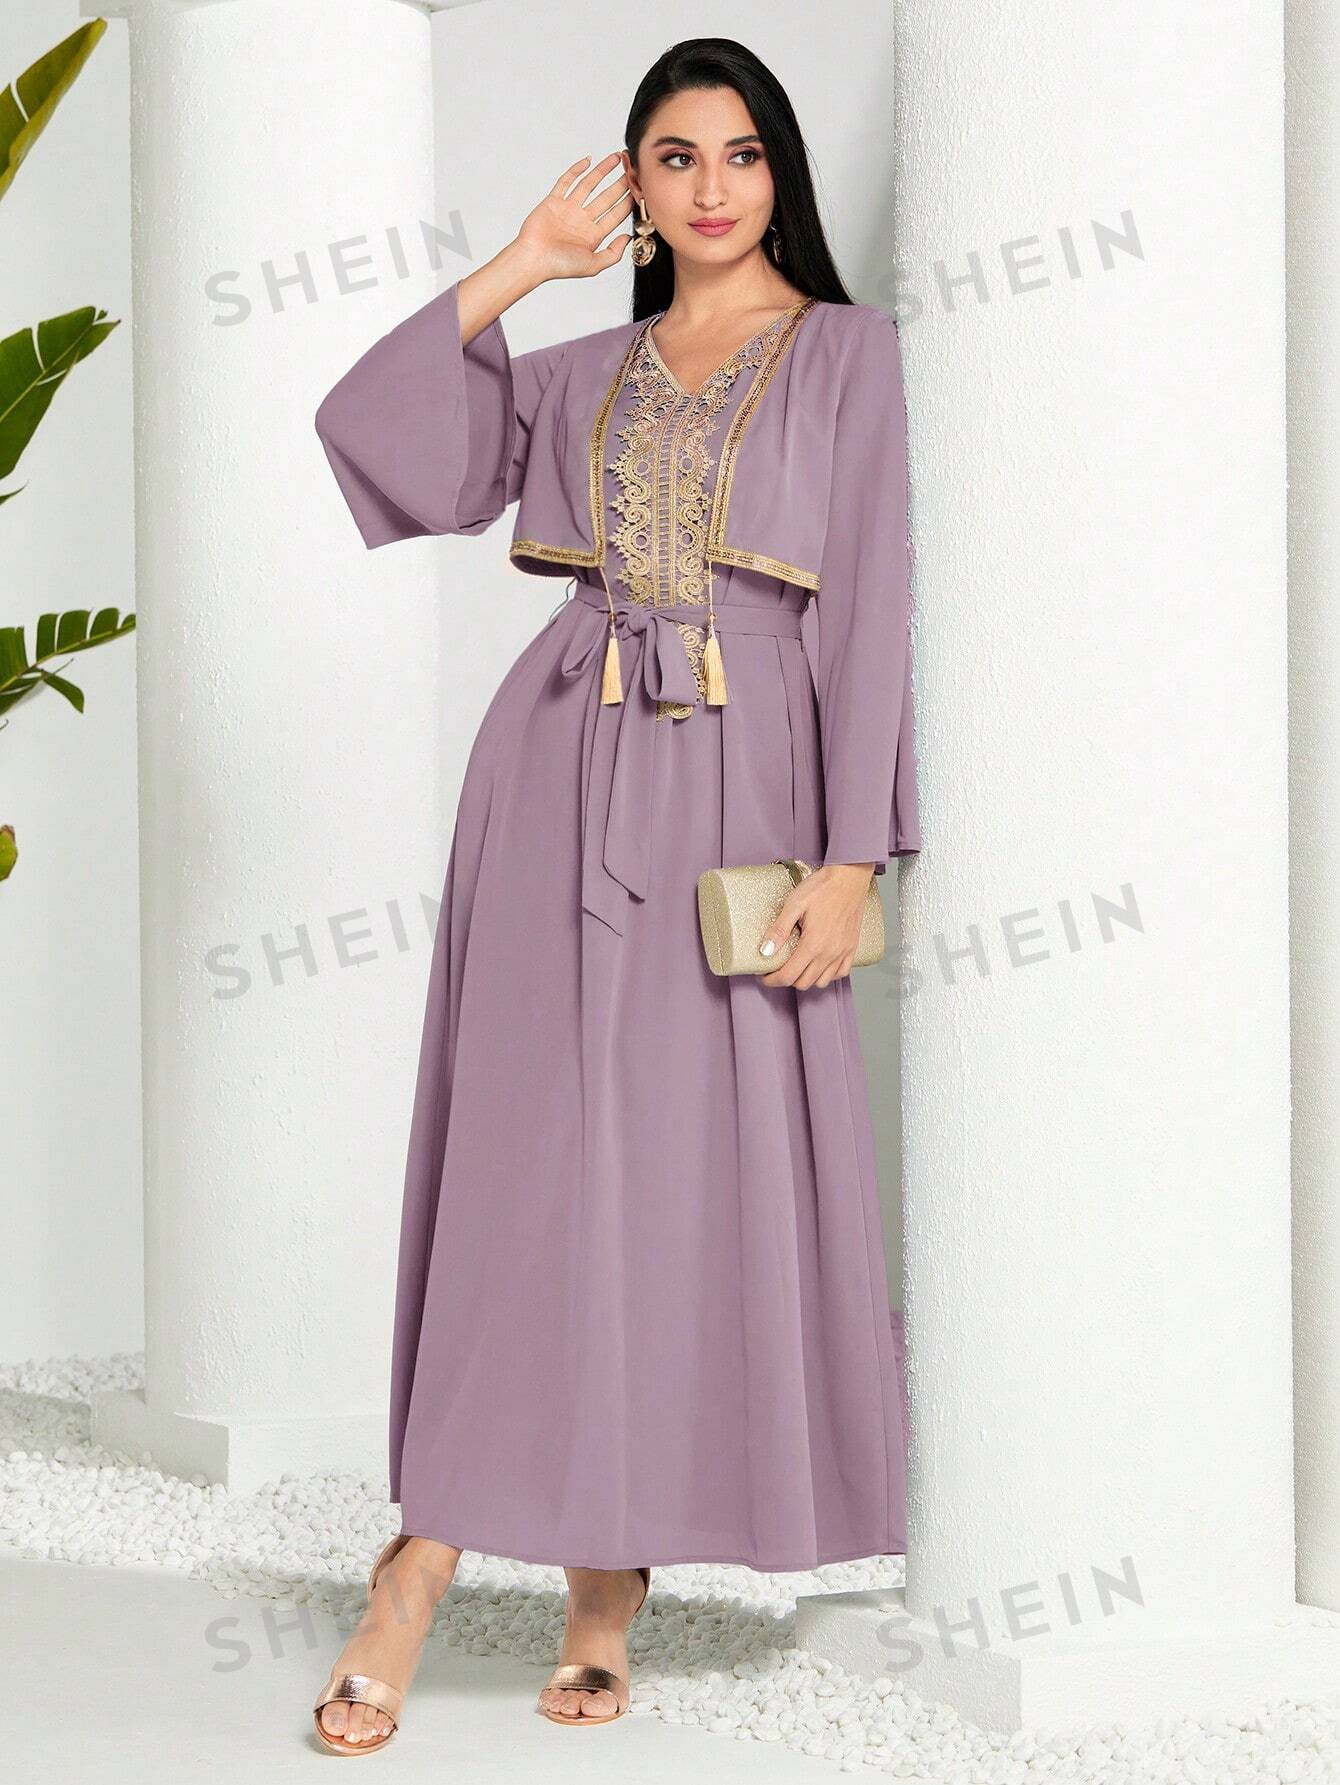 SHEIN Modely женское арабское платье в стиле пэчворк из тканой ленты с бахромой и длинными рукавами, пыльный розовый shein modely женское арабское платье в стиле пэчворк из тканой ленты с бахромой и длинными рукавами пыльный фиолетовый